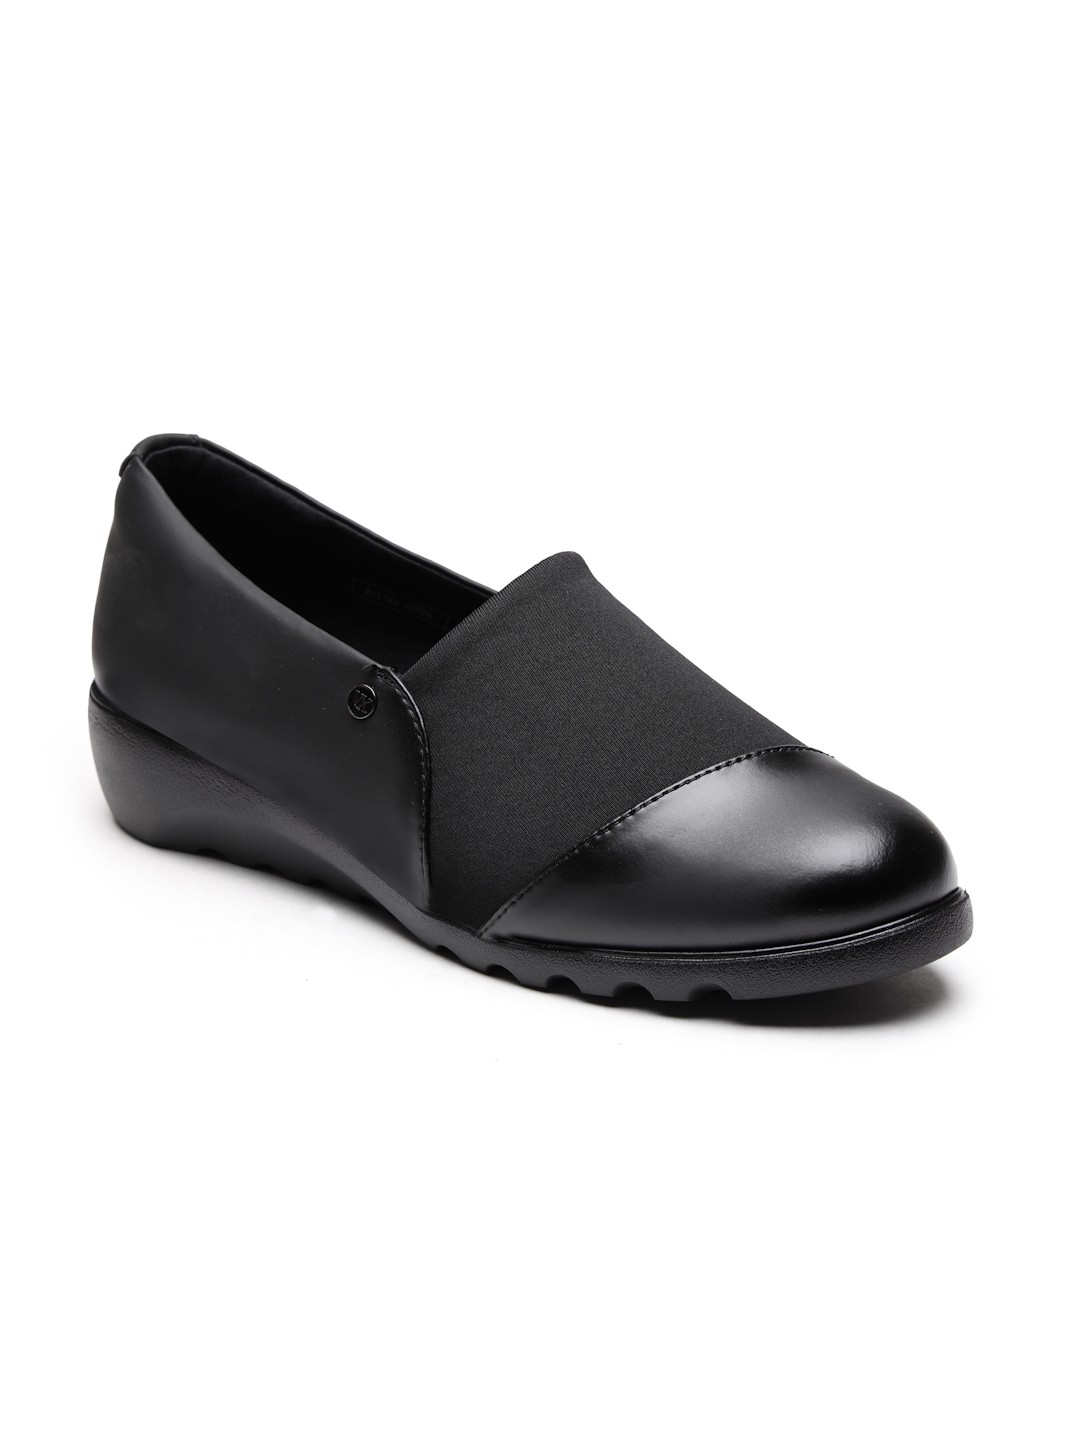 Buy VON WELLX GERMANY comfort women's black casual shoes AYLA In Delhi